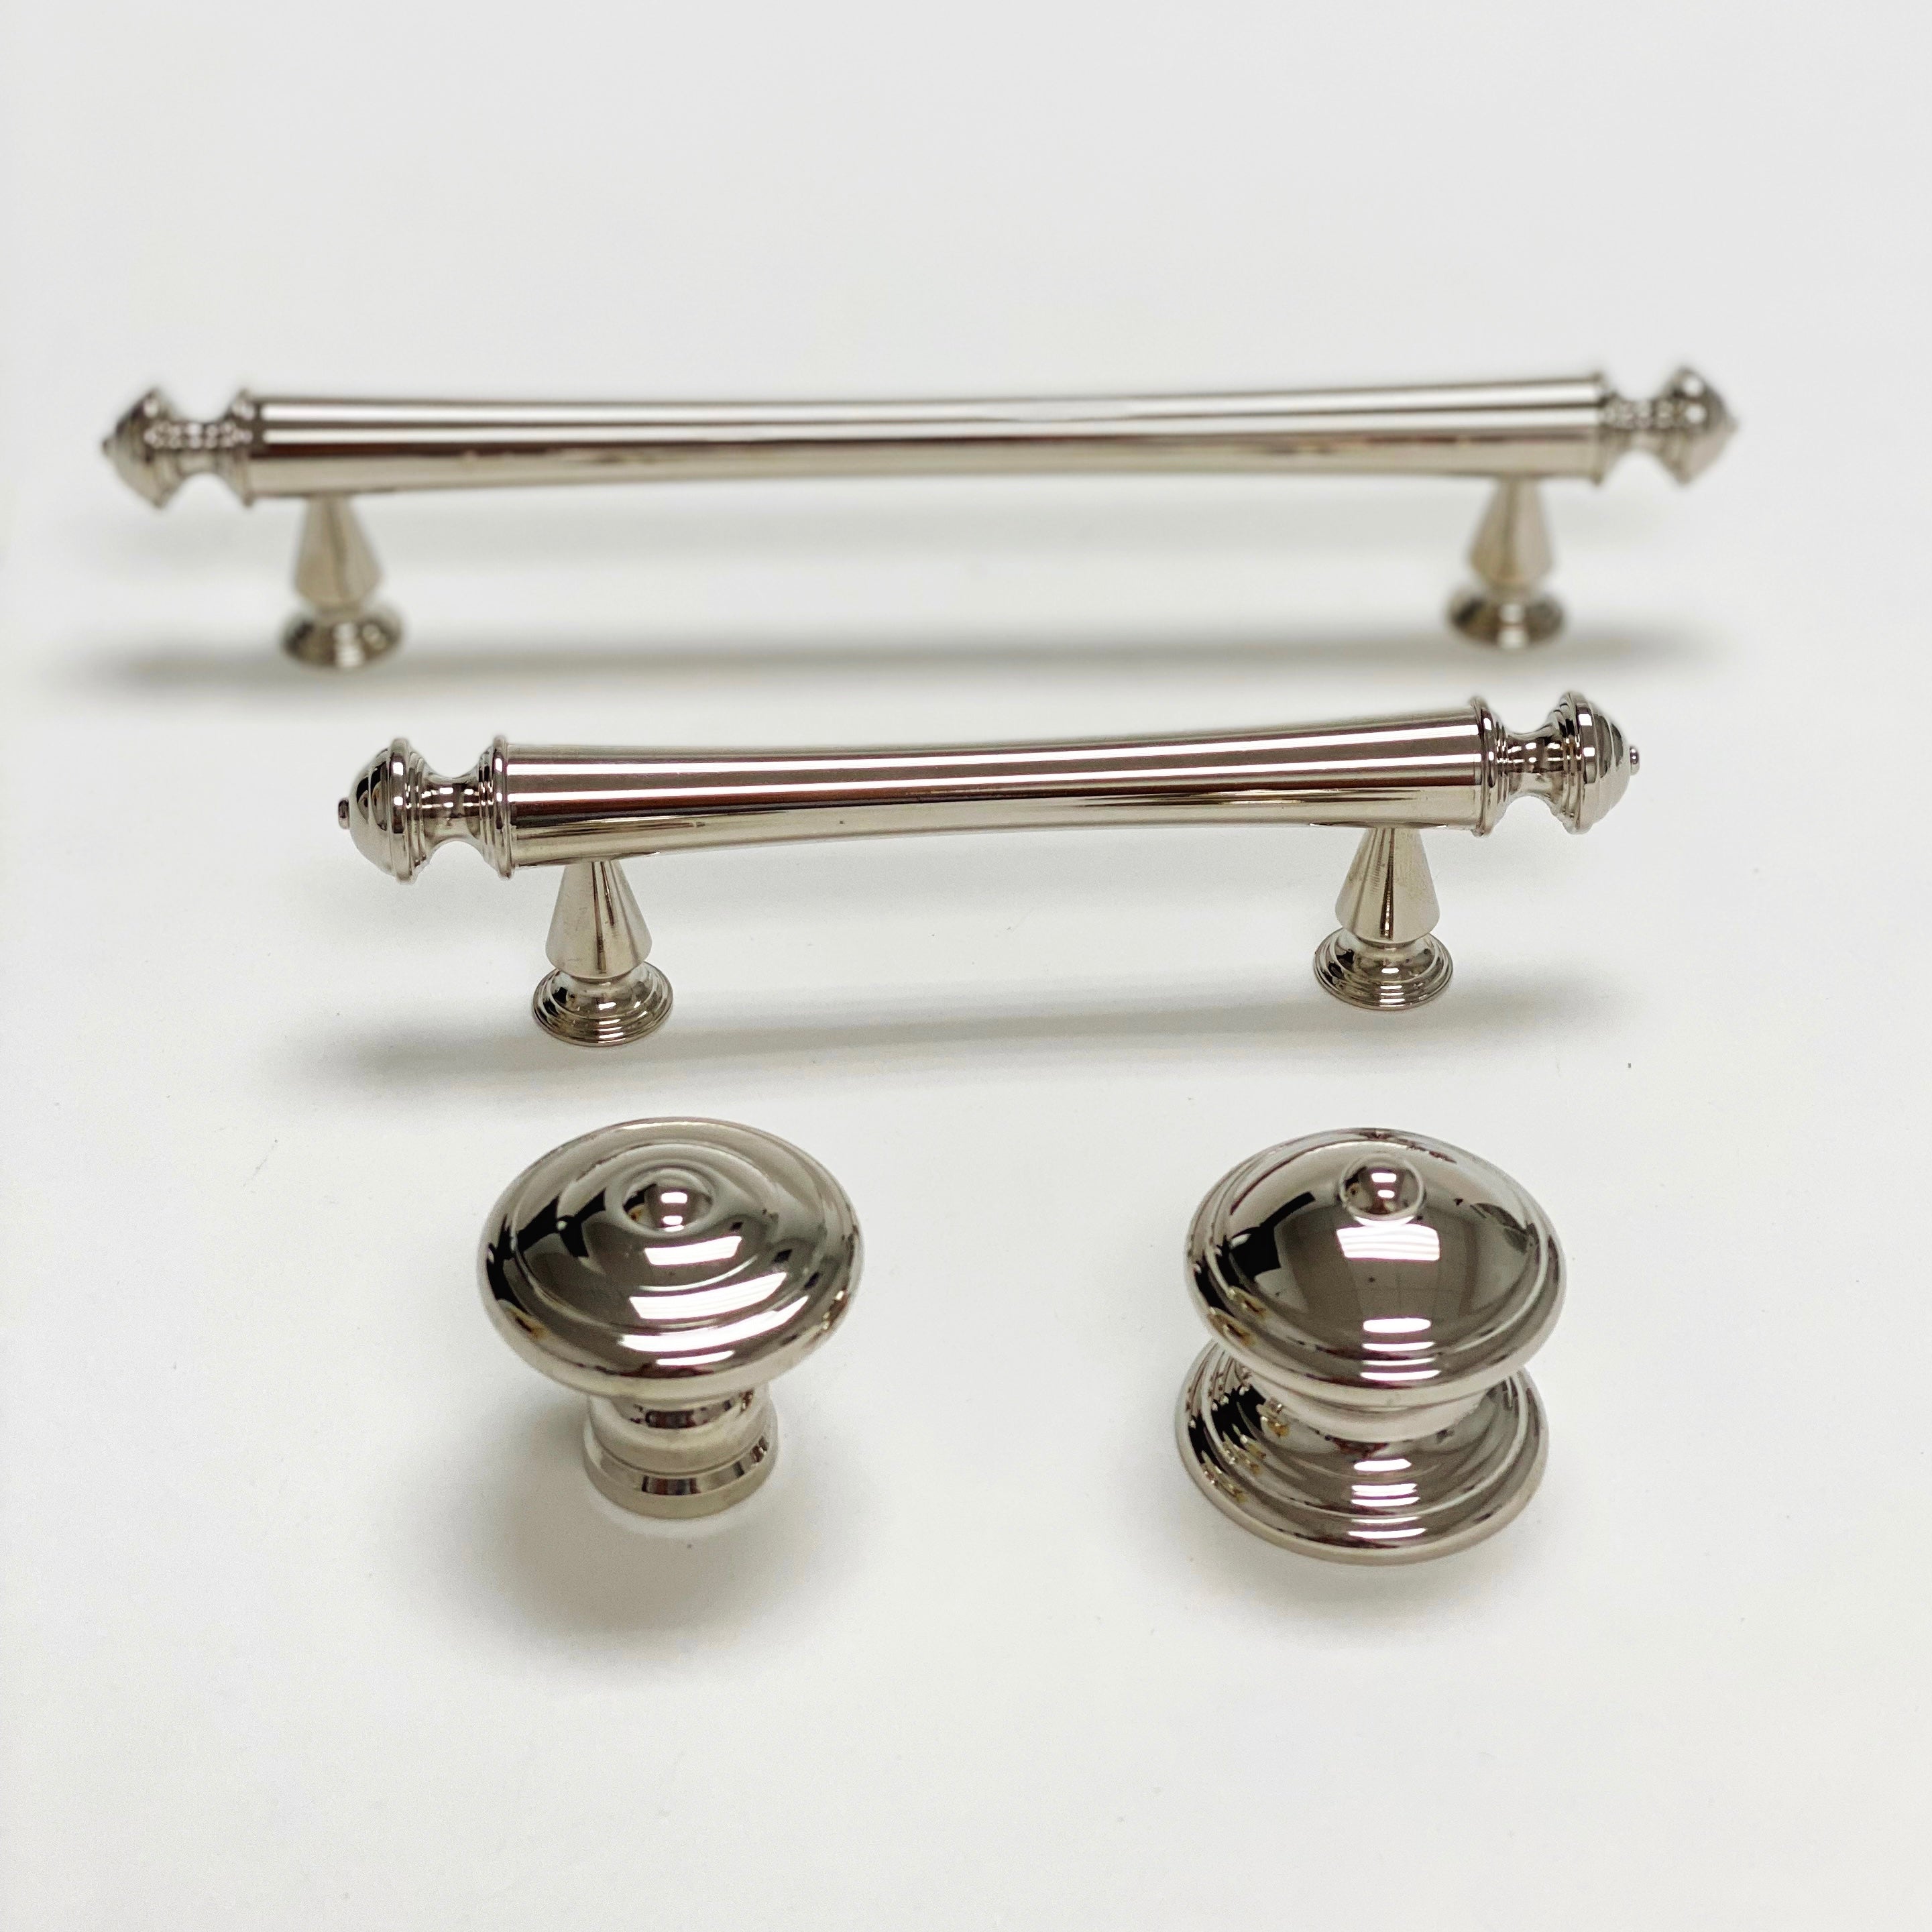 Polished Nickel "Emmeline" Cabinet Knobs and Drawer Pulls - Forge Hardware Studio